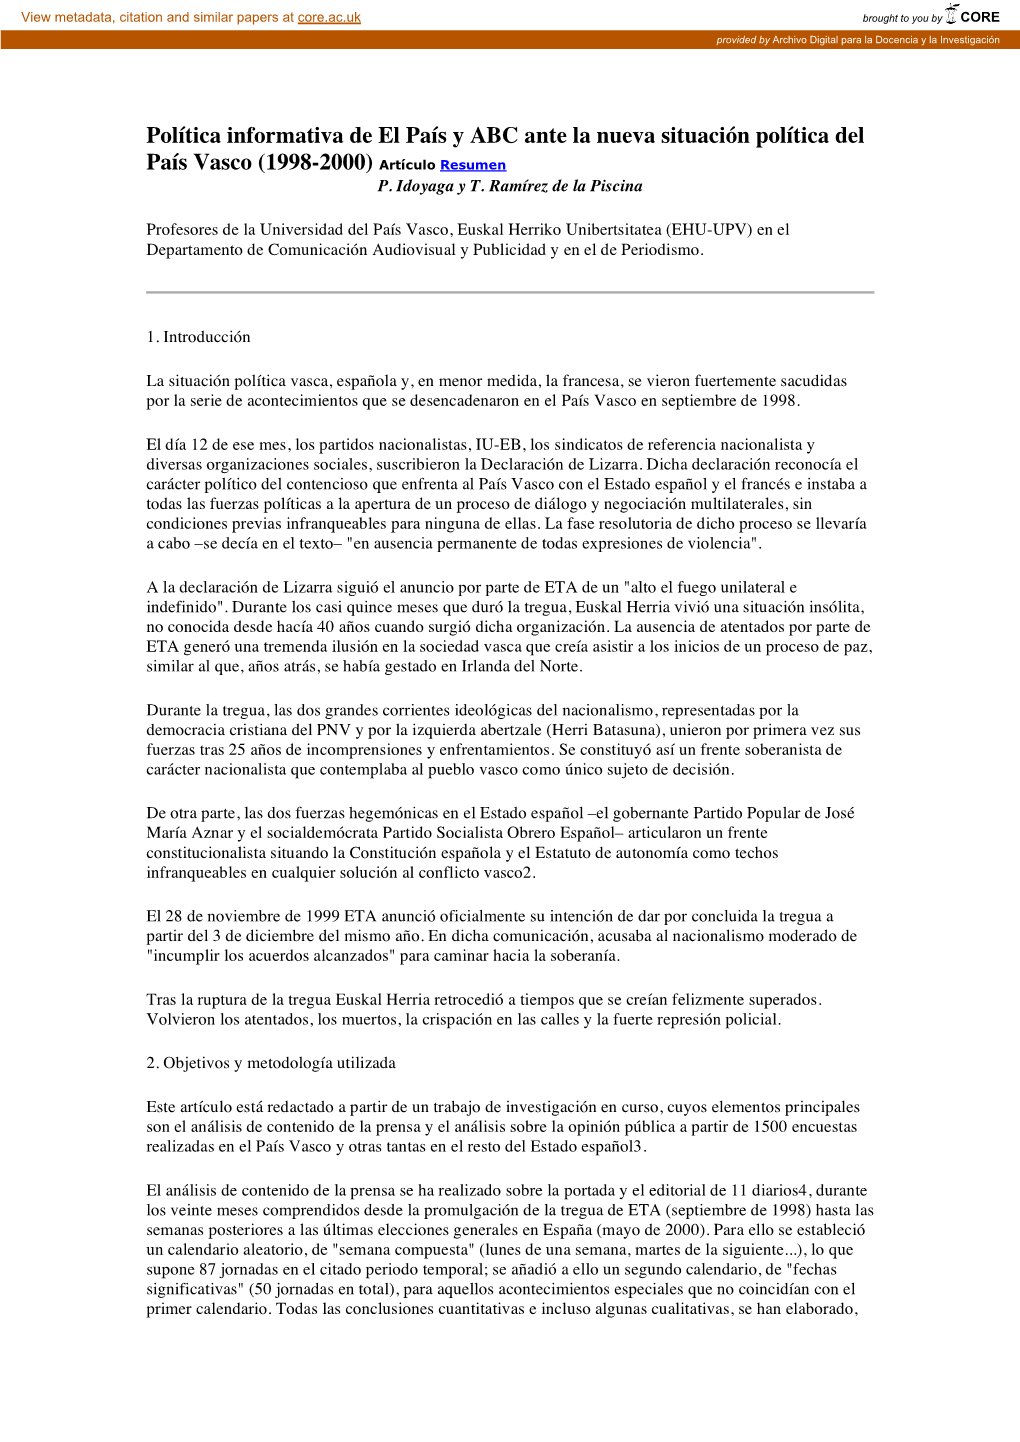 Política Informativa De El País Y ABC Ante La Nueva Situación Política Del País Vasco (1998-2000) Artículo Resumen P